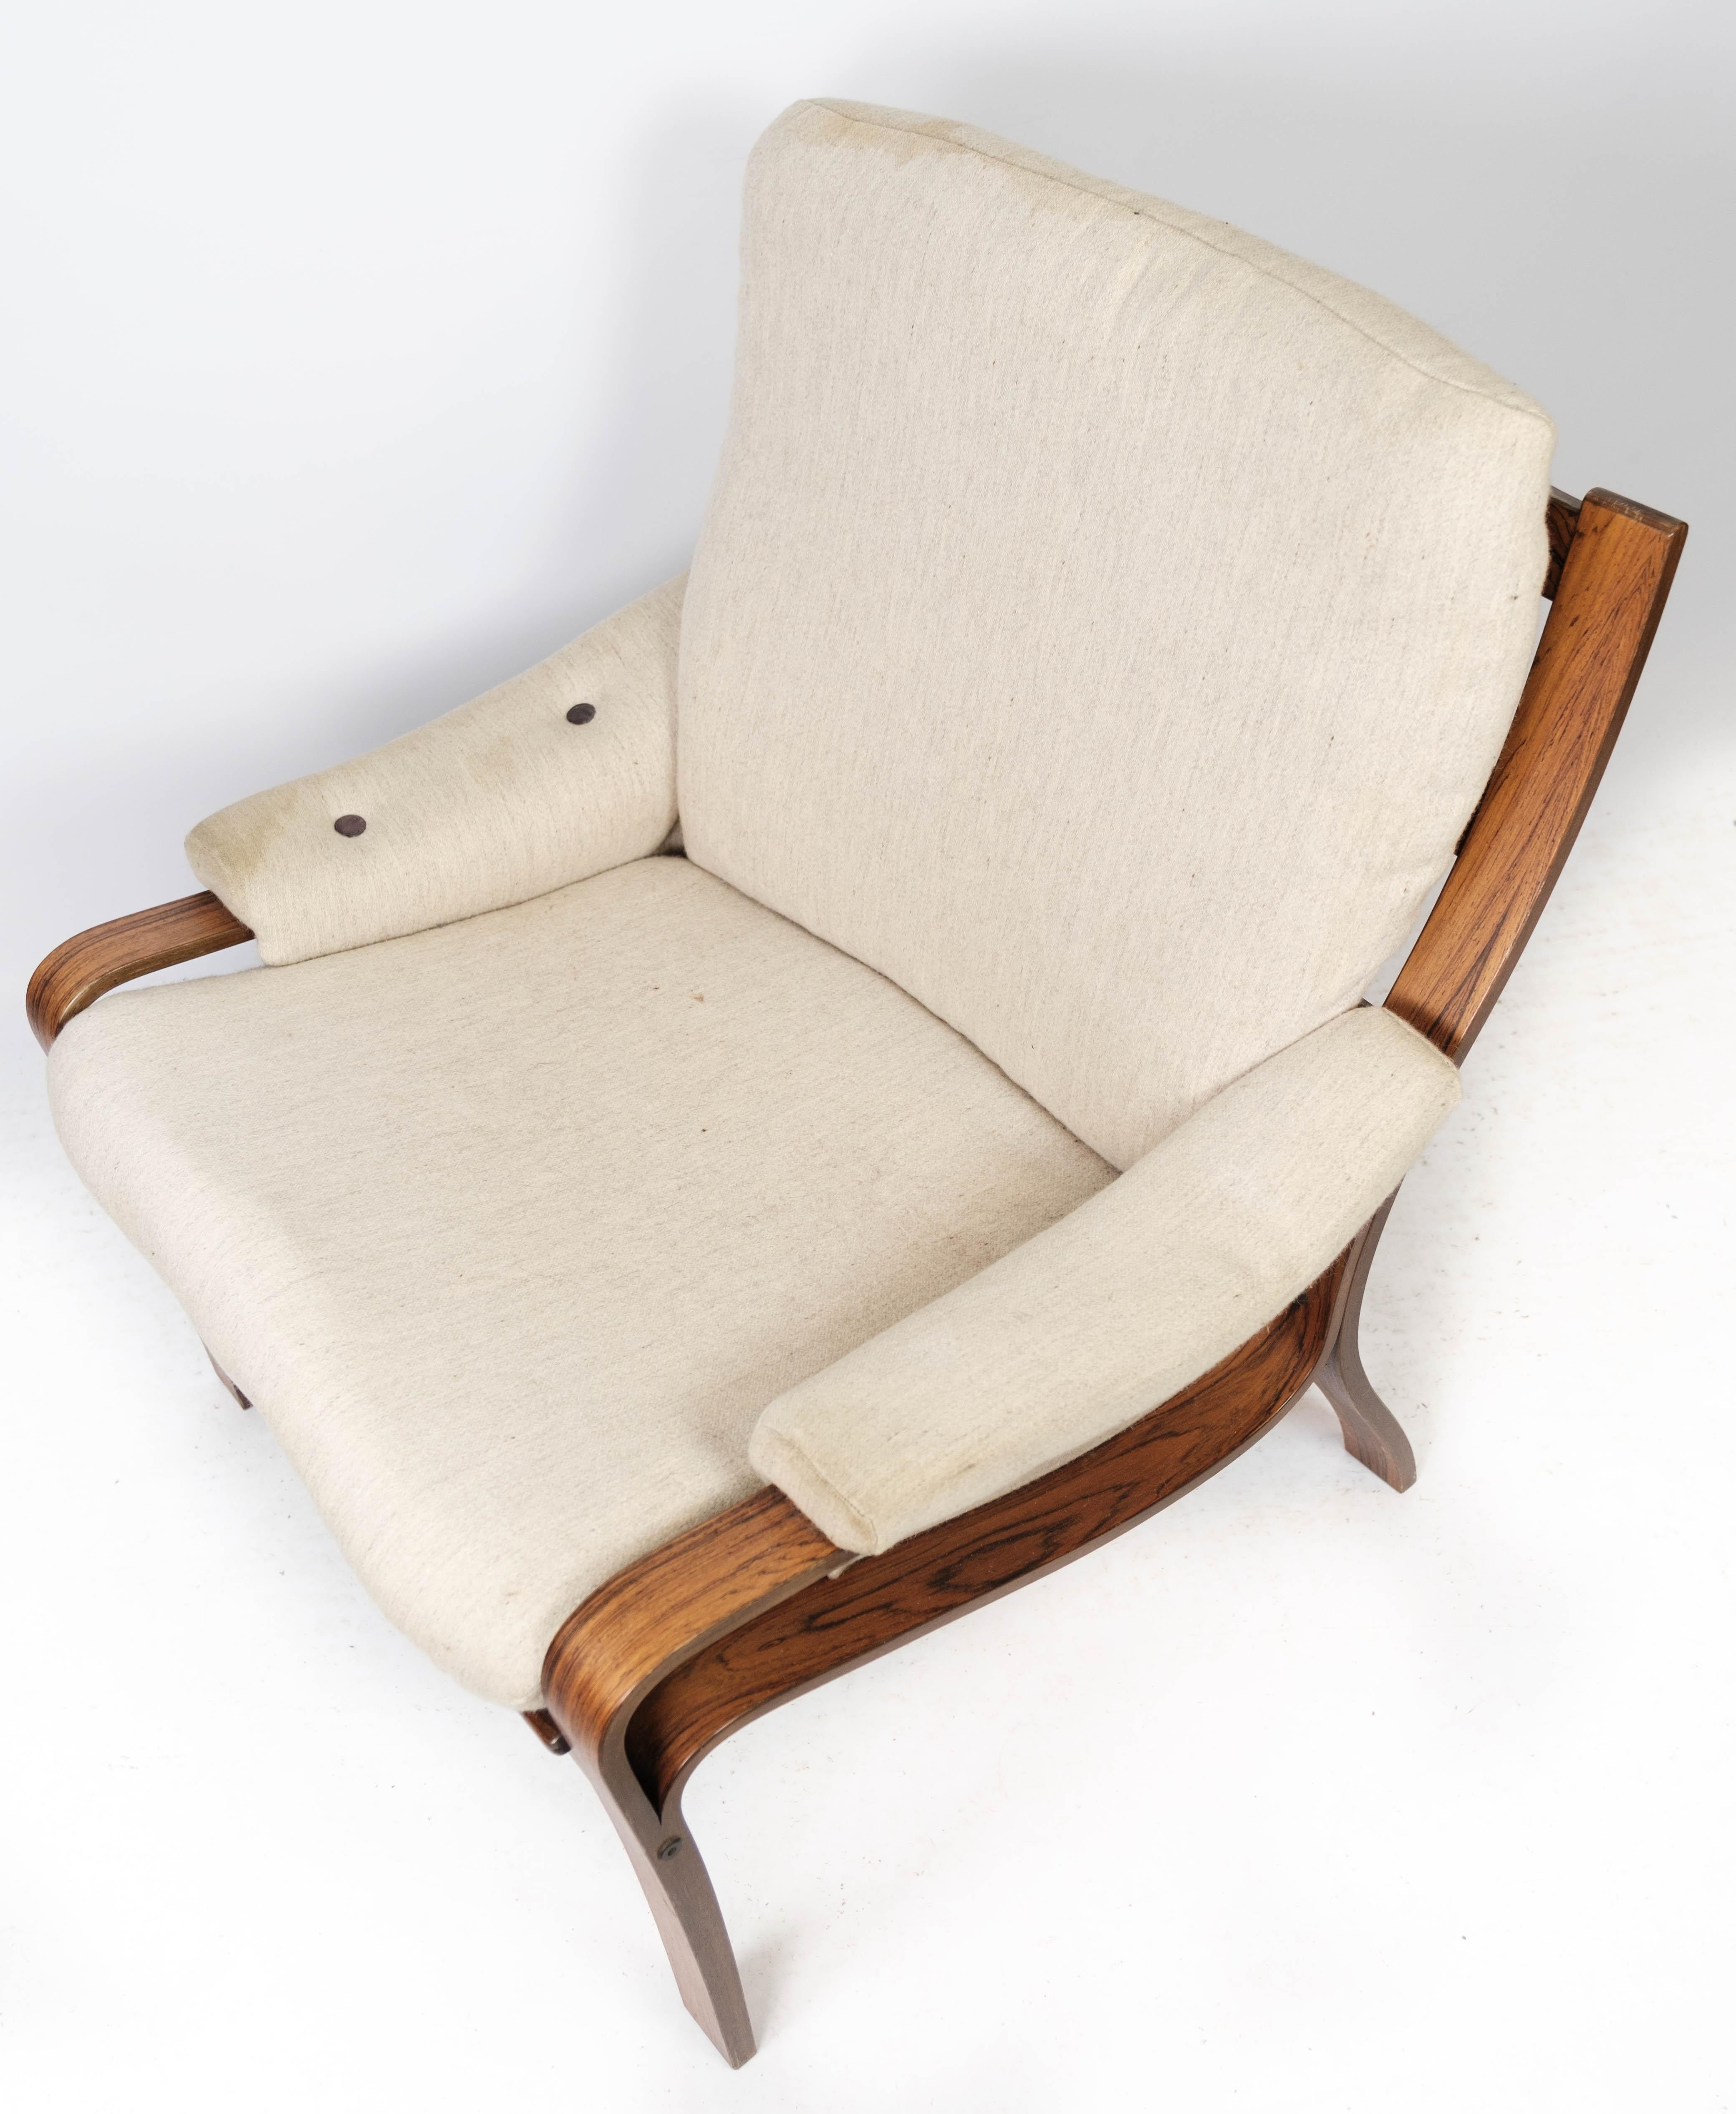 Le fauteuil en bois de rose, tapissé de tissu léger et de design danois des années 1960, est un meuble élégant et confortable qui respire la beauté intemporelle et le savoir-faire artisanal.

Les tons chauds et le magnifique motif naturel du bois de